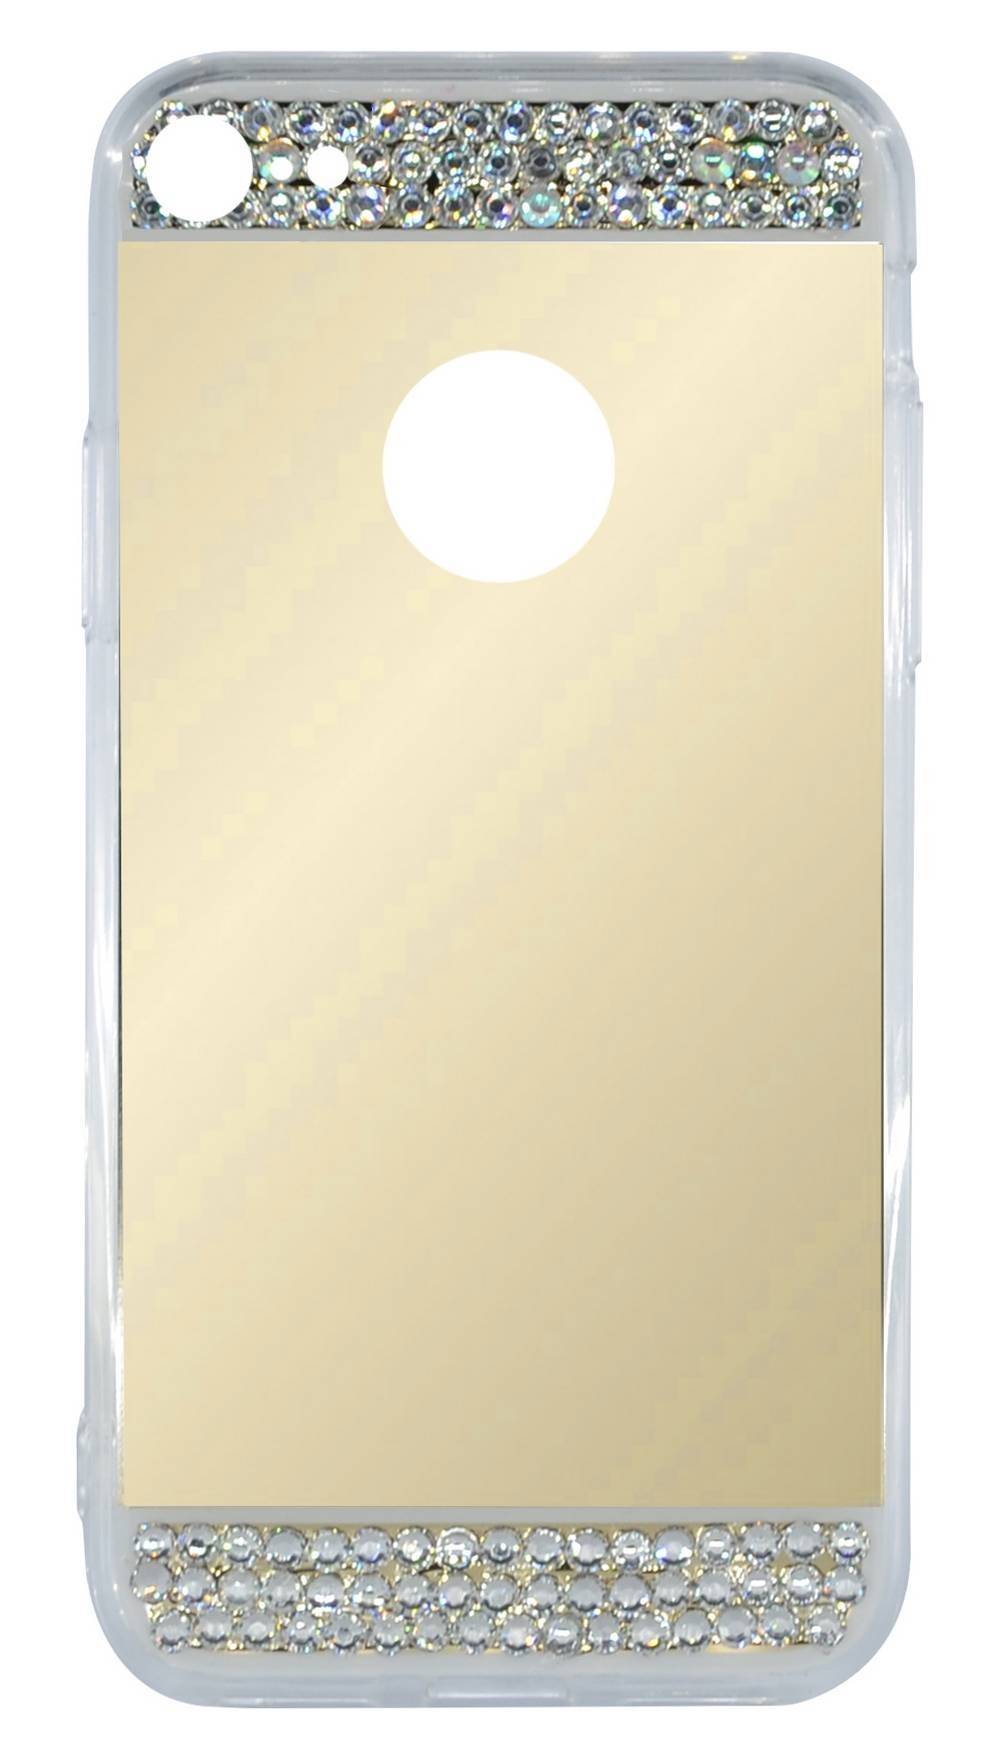 Θήκη Faceplate Ancus Luxuxry Diamond για Apple iPhone 7 / 8 / SE (2020) Χρυσαφί